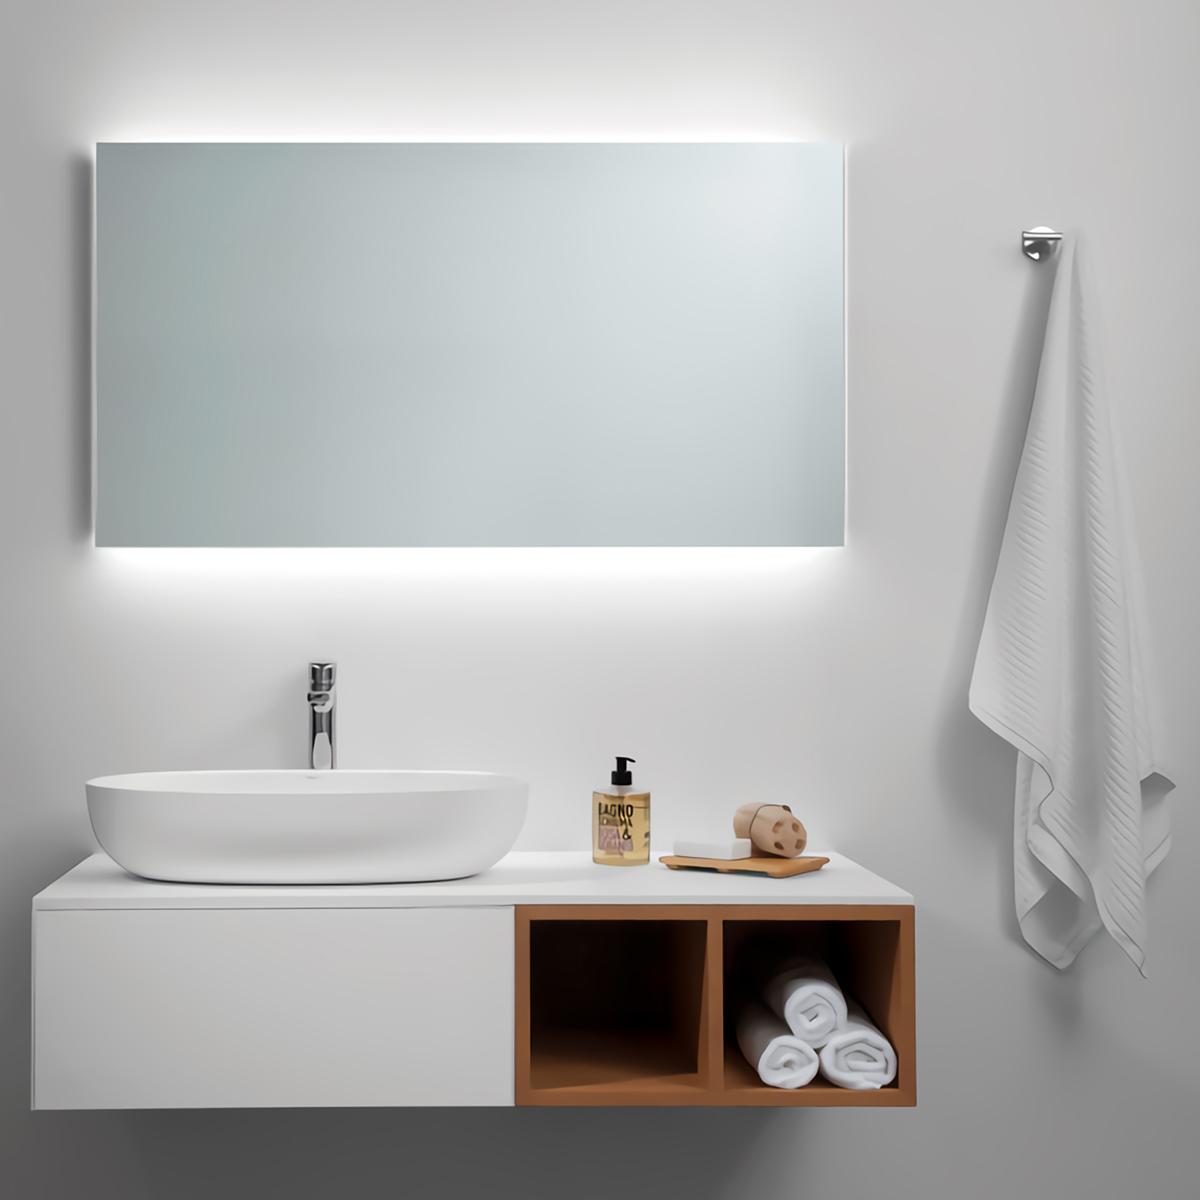  CFYLO Espejo de baño LED de 24 x 32 pulgadas, espejo de baño  con luces, espejo LED para baño, espejo de baño iluminado, espejo de baño  con luz regulable antiniebla, espejo